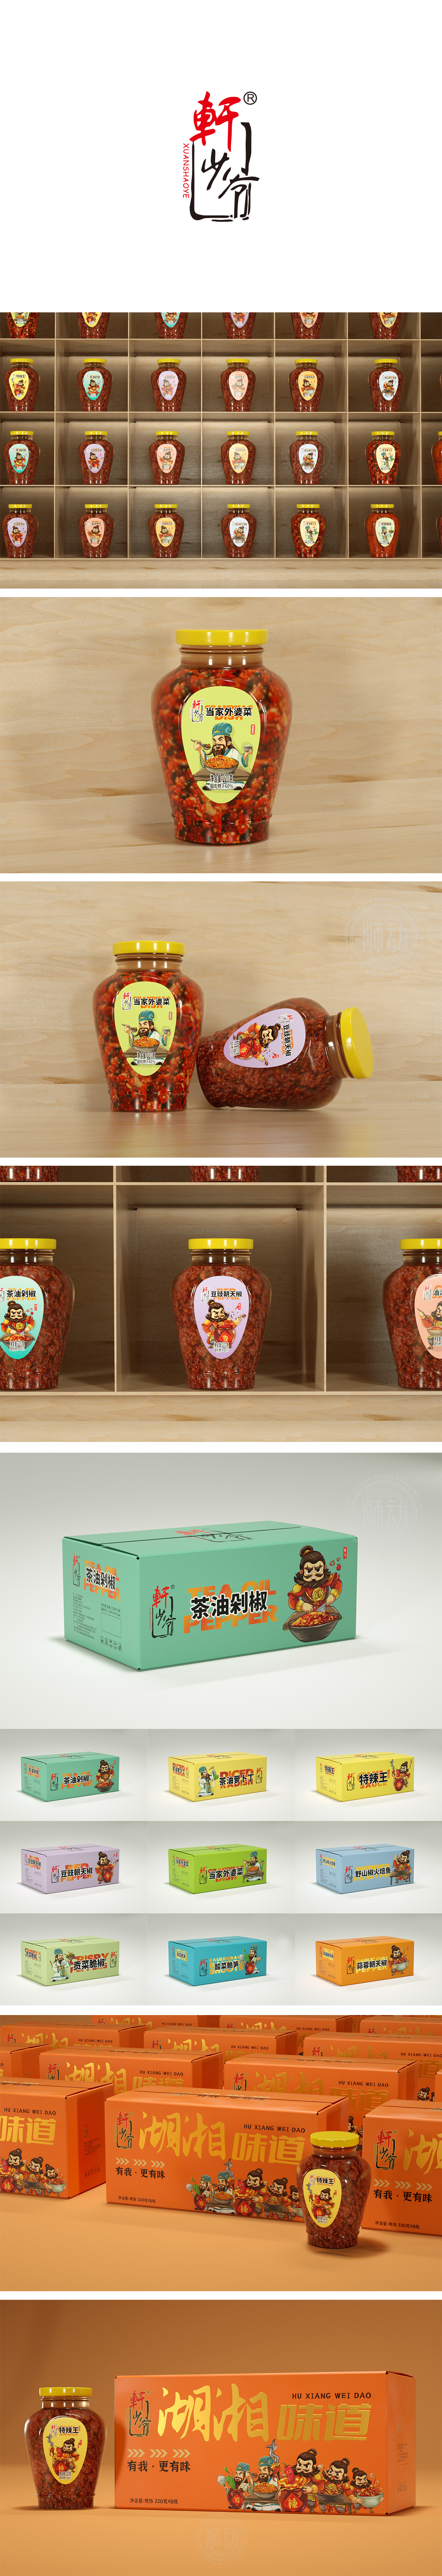 辣椒酱卡通形象产品包装设计